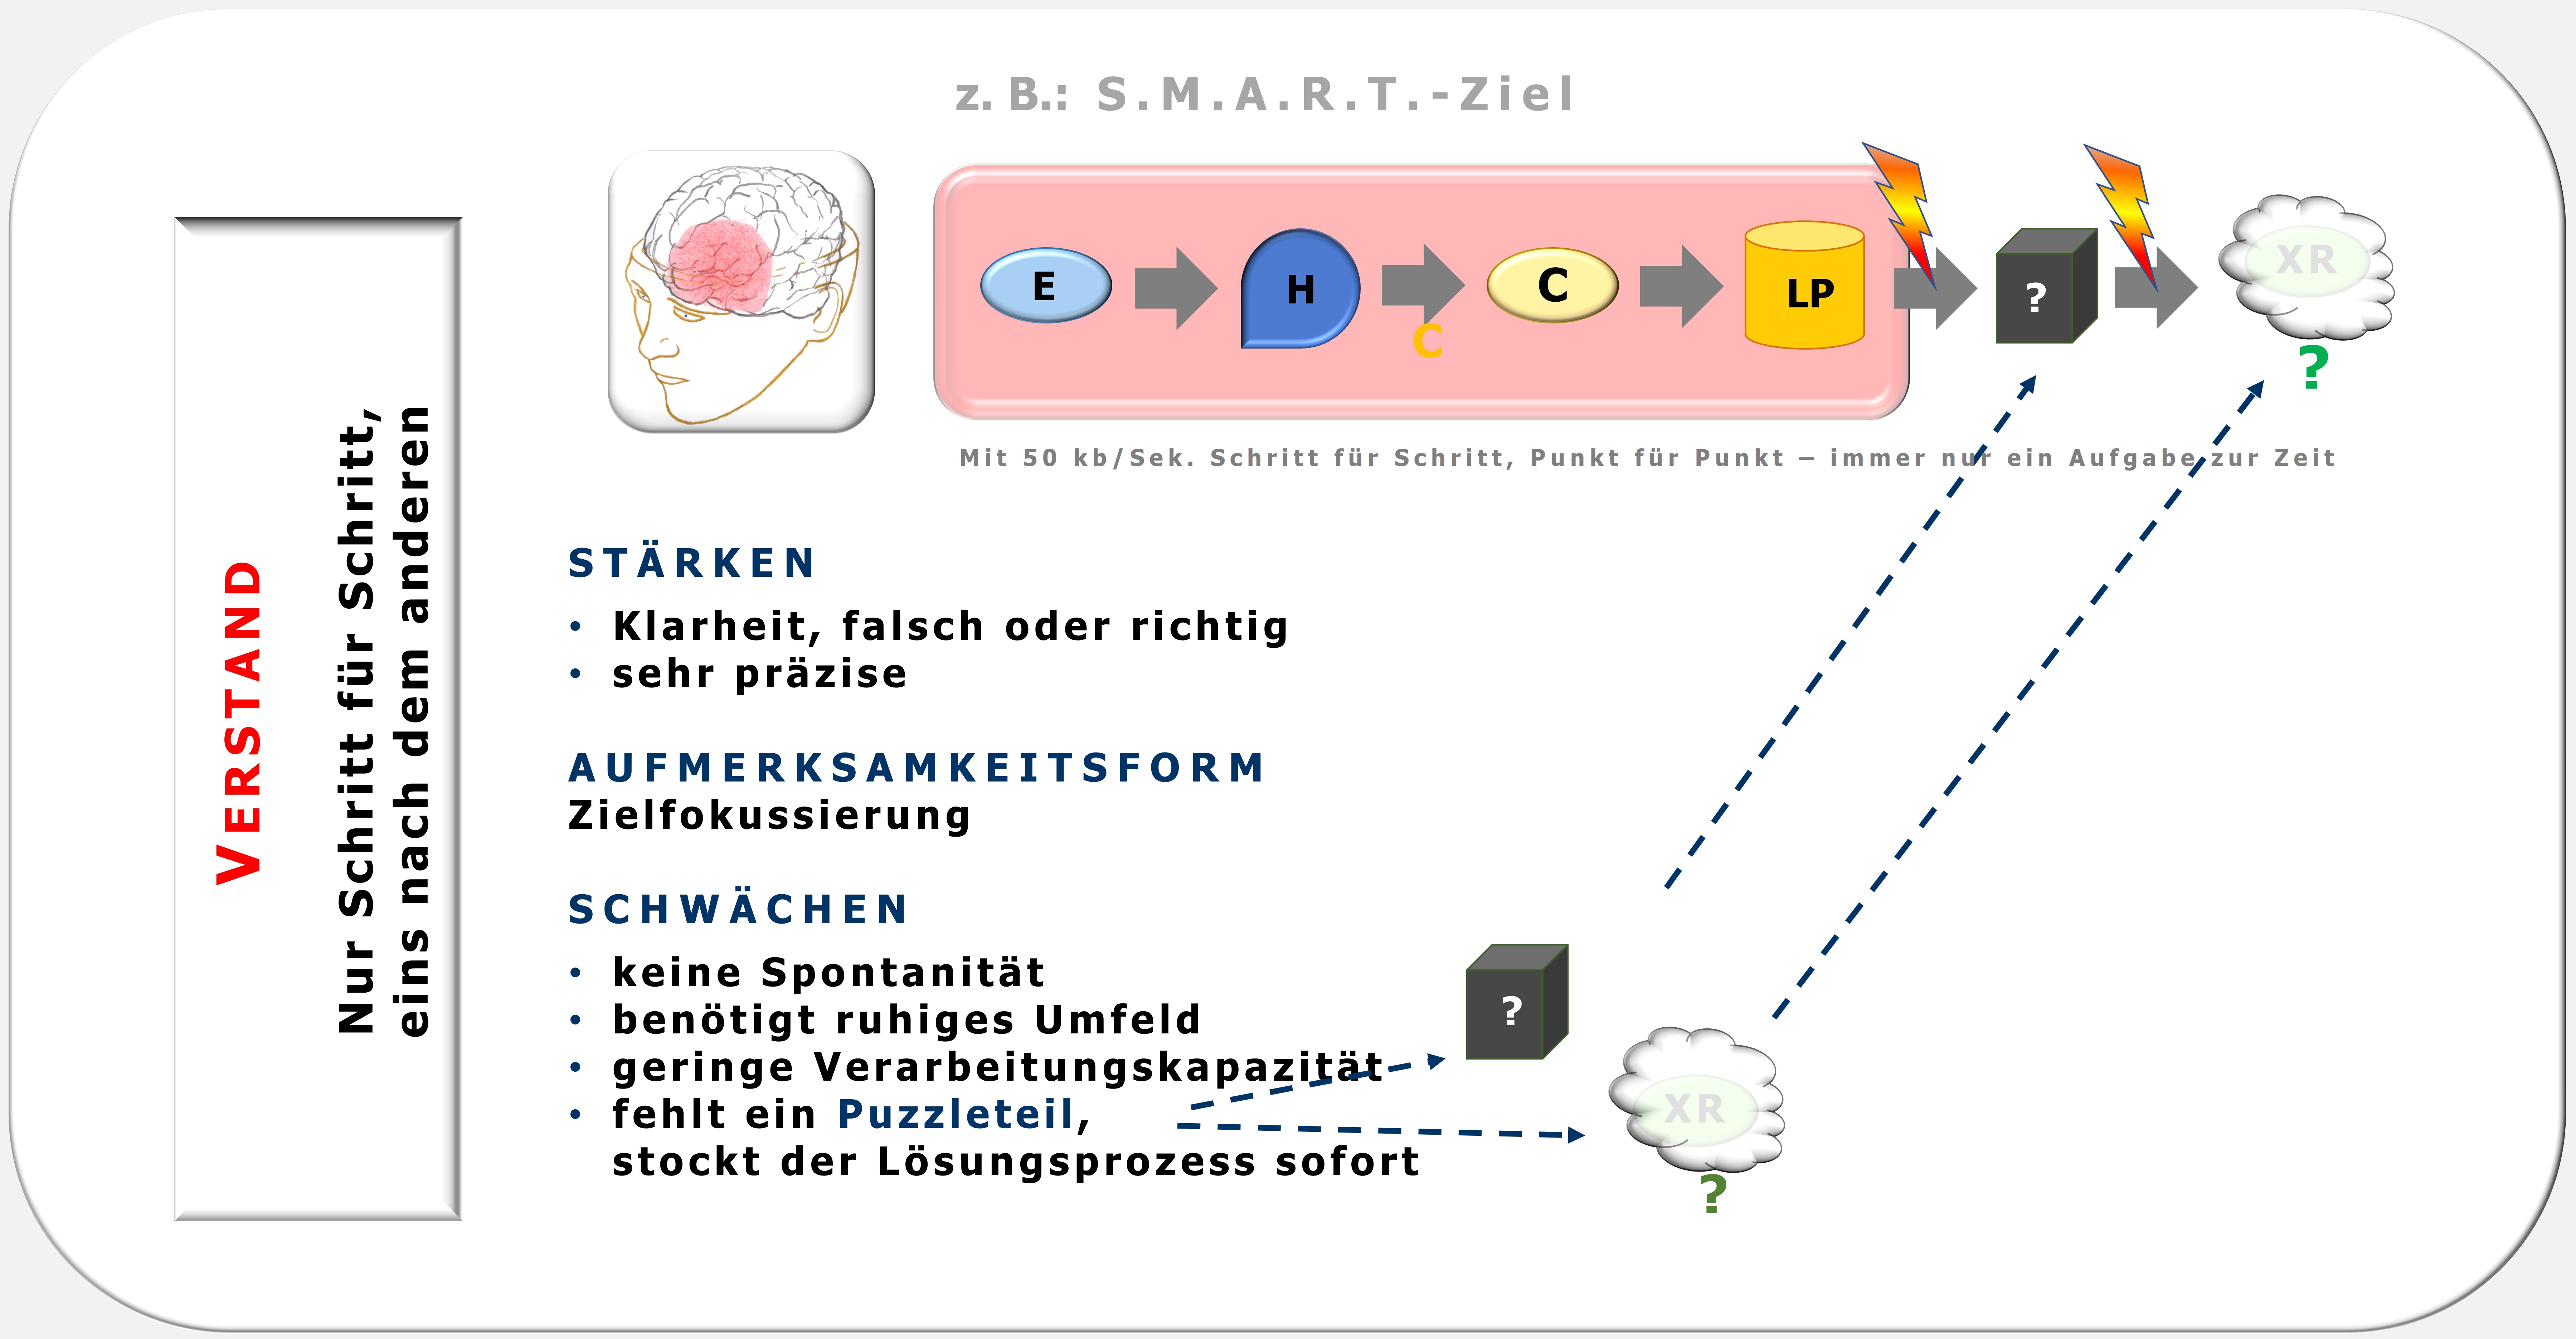 S.M.A.R.T.-Ziel, Verstand, Hartmut Neusitzer, Zürcher Ressourcen Modell